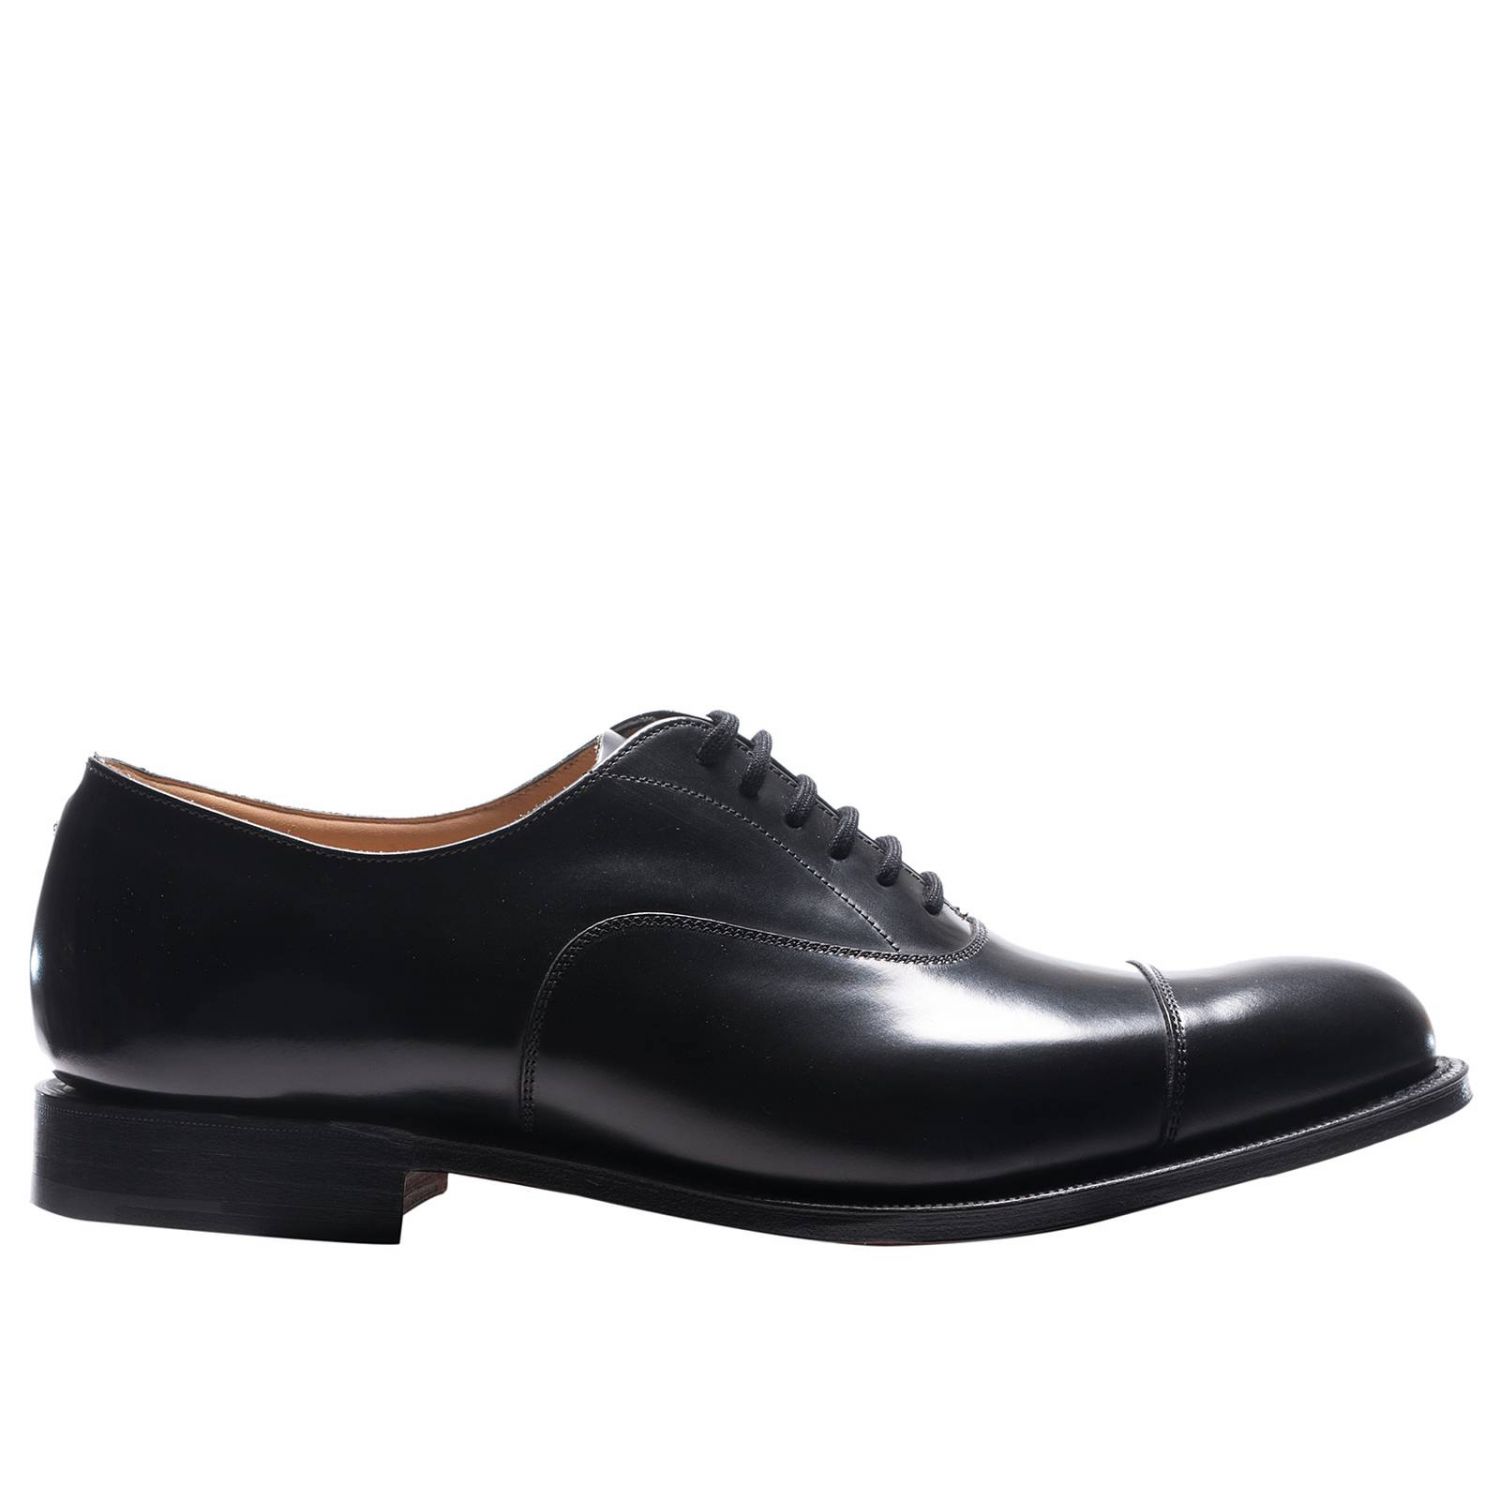 Hombre Zapatos de Zapatos con cordones de Zapatos Oxford Zapatos Oxford Churchs de hombre de color Negro 